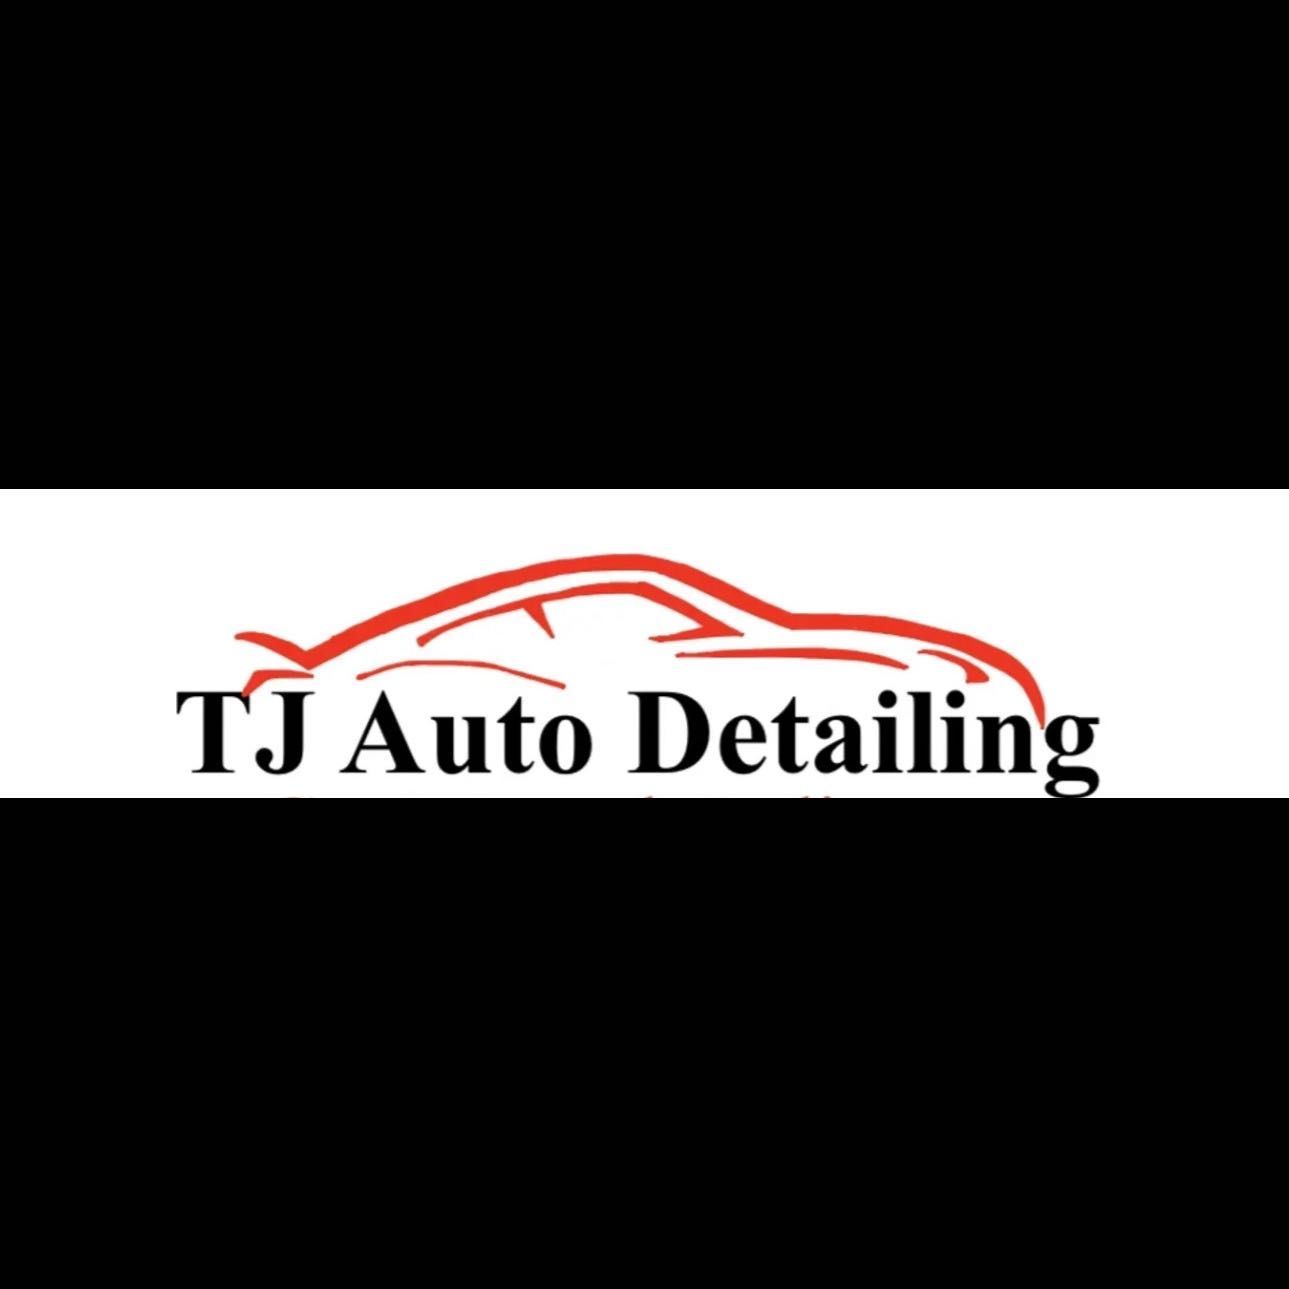 TJ Auto Details, 2211 Cinder Ln, Junction City, 66441